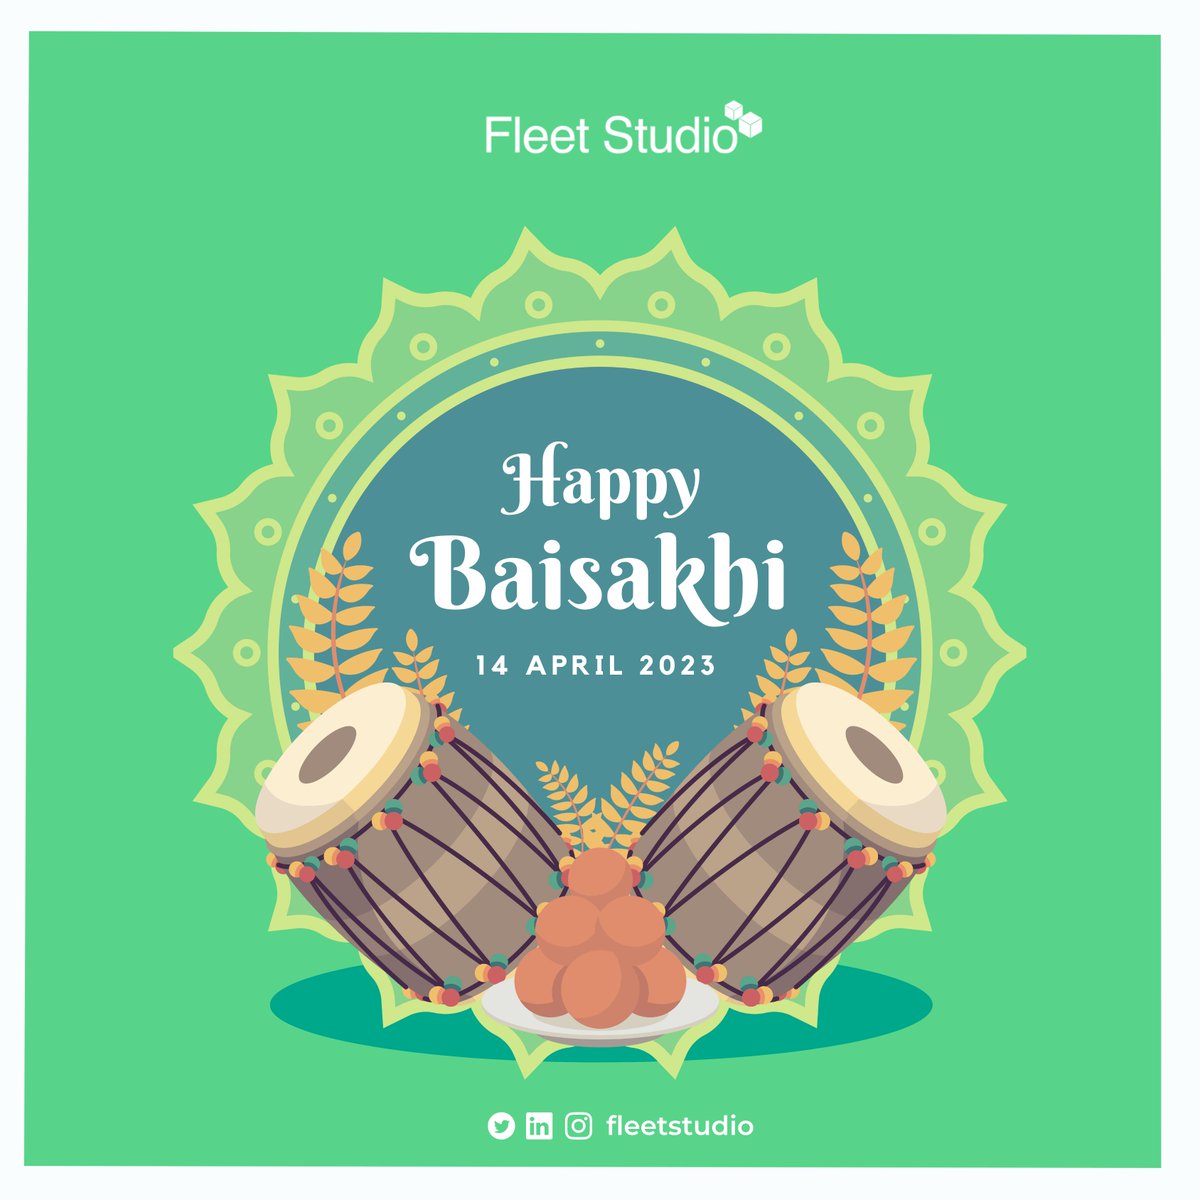 #baisakhi #happybaisakhi #happybaisakhi2023 #fleetstudio